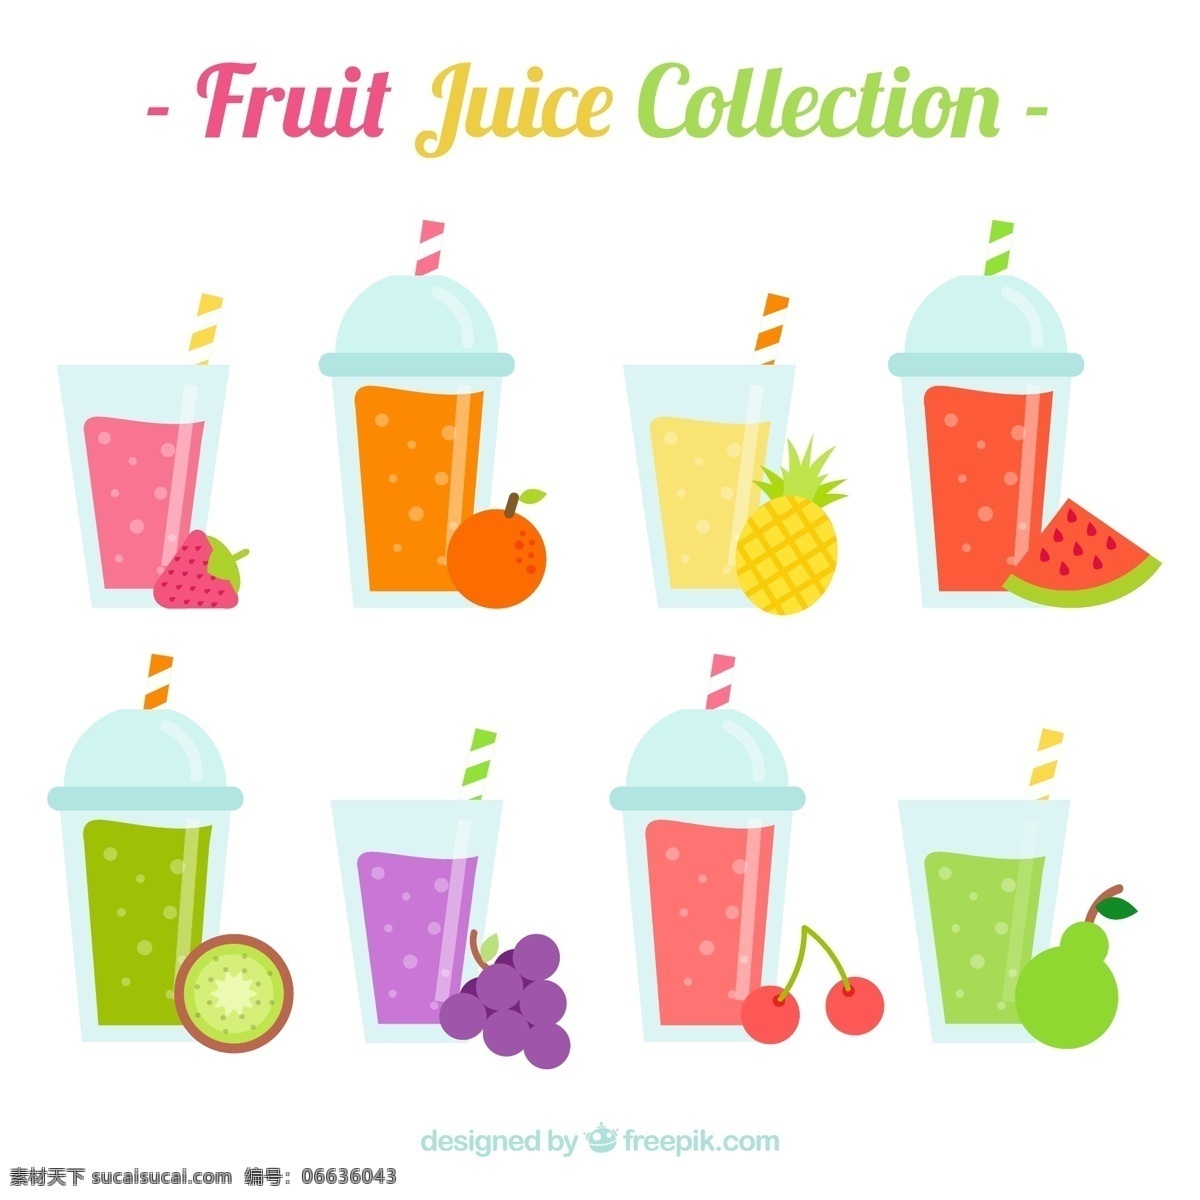 八 种 美味 果汁 平面 选择 食品 夏季 水果 颜色 橙子 热带 平板 饮料 自然 健康 平面设计 草莓 菠萝 吃 健康食品 西瓜 葡萄